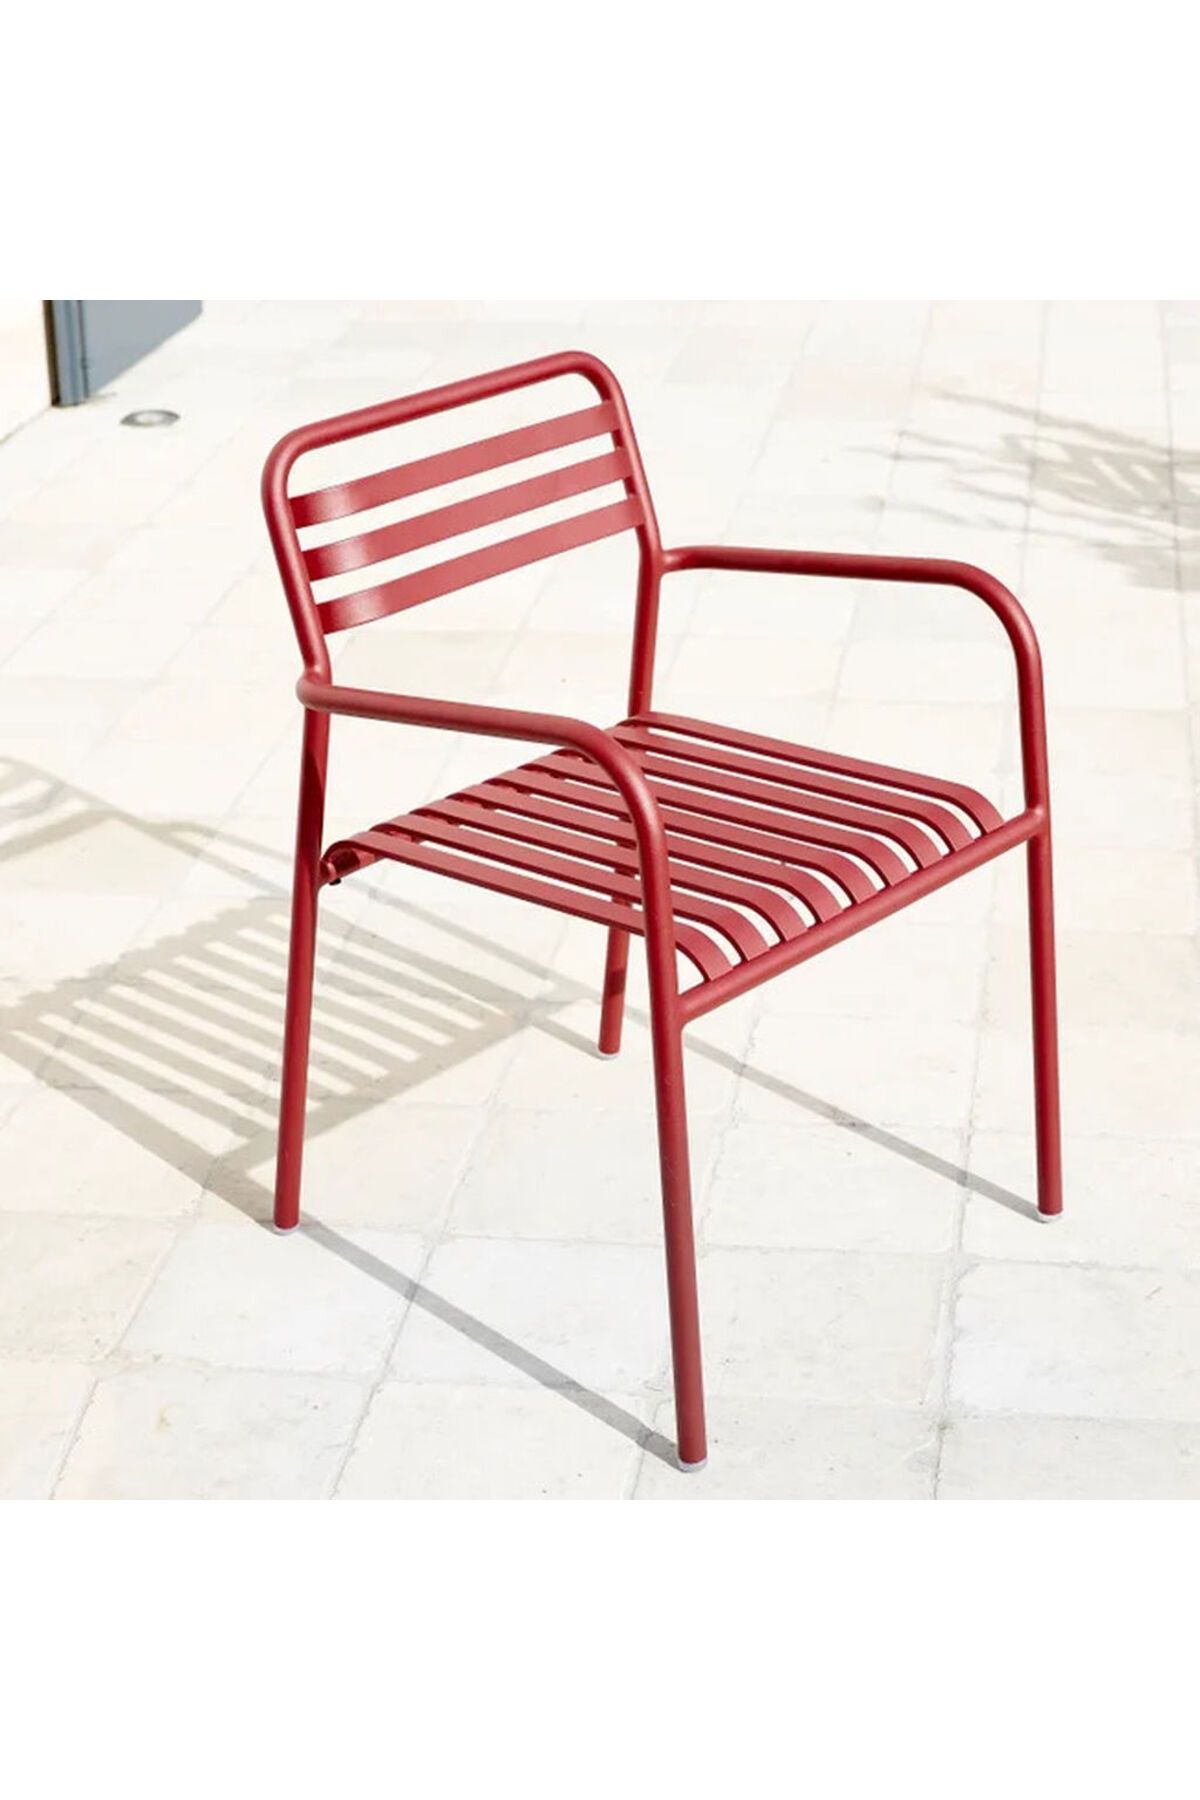 Alaylı Mobilya Lotus (4 ADET) Metal Kollu Bahçe Sandalyesi, Metal Dış Mekan Sandalyesi - Kırmızı Boya